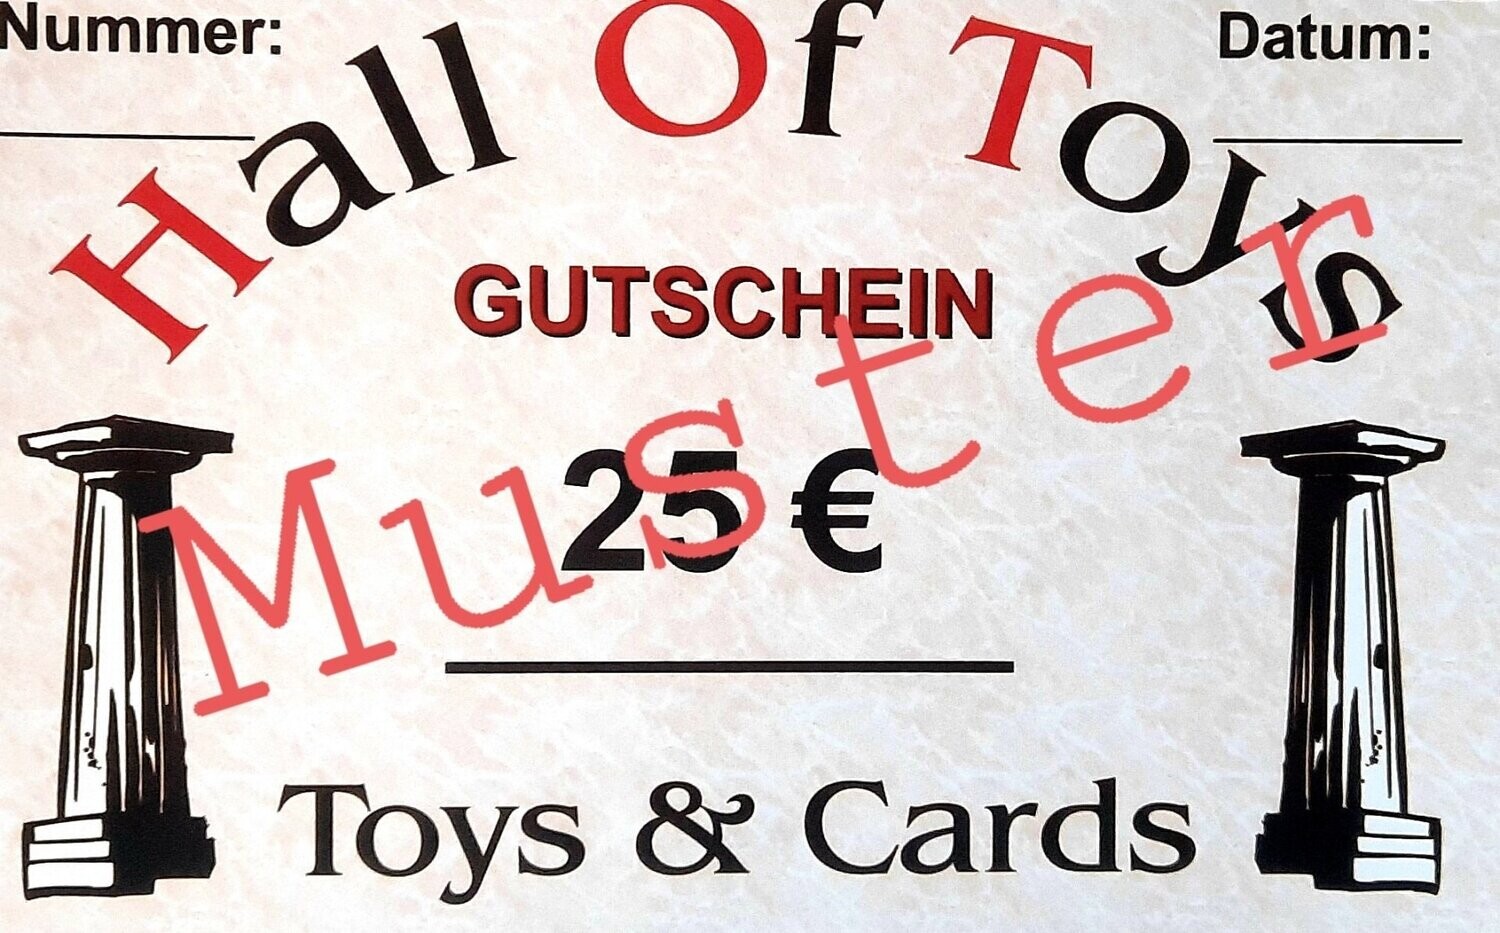 GUTSCHEIN 25 € Hall Of Toys